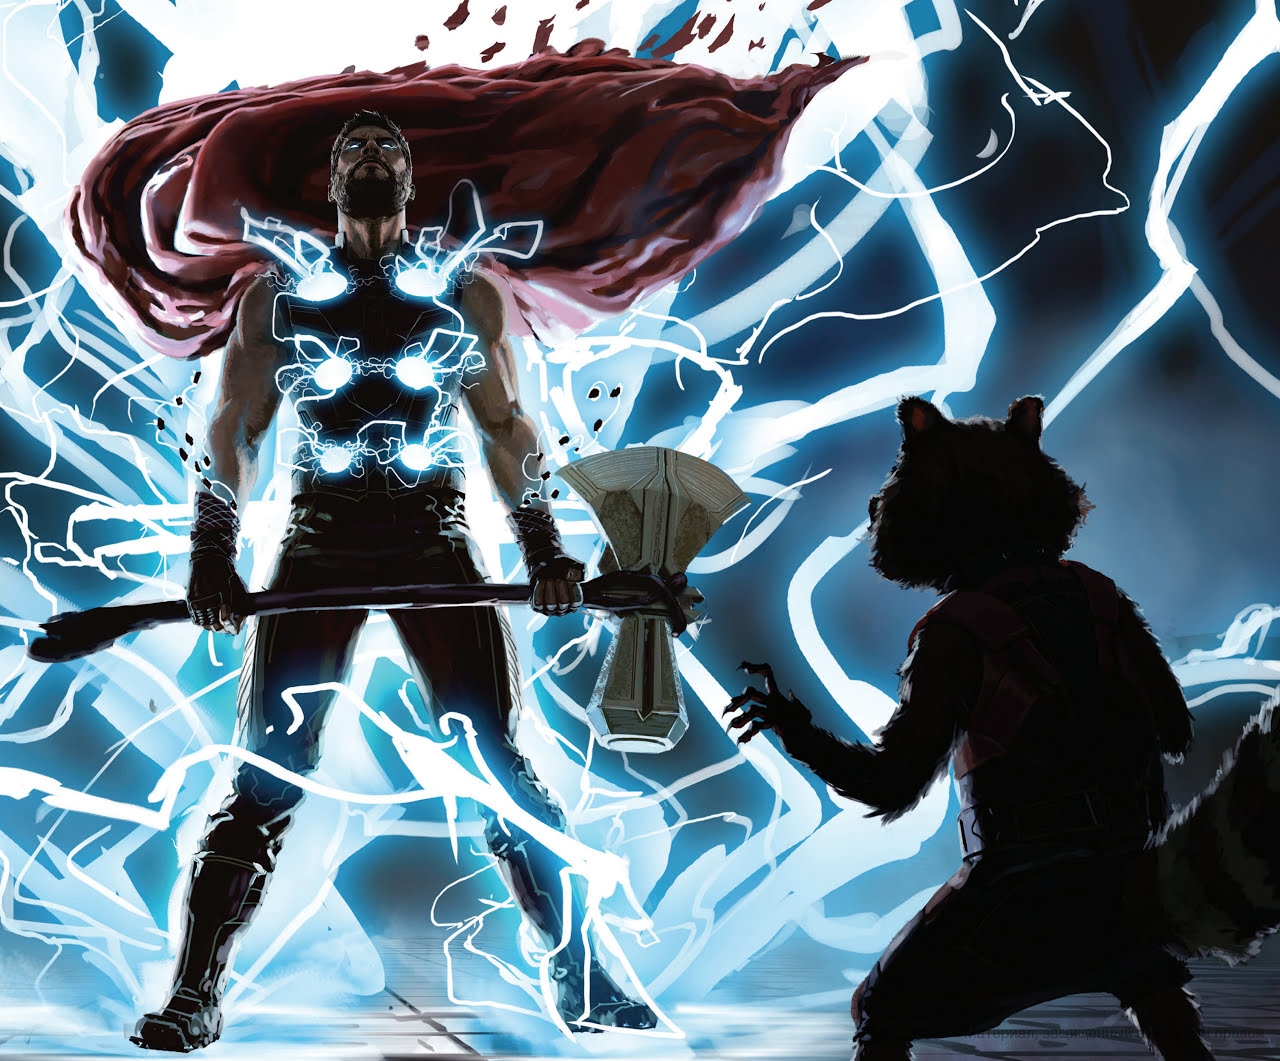 The Art of Marvel's Avengers Infinity War 247